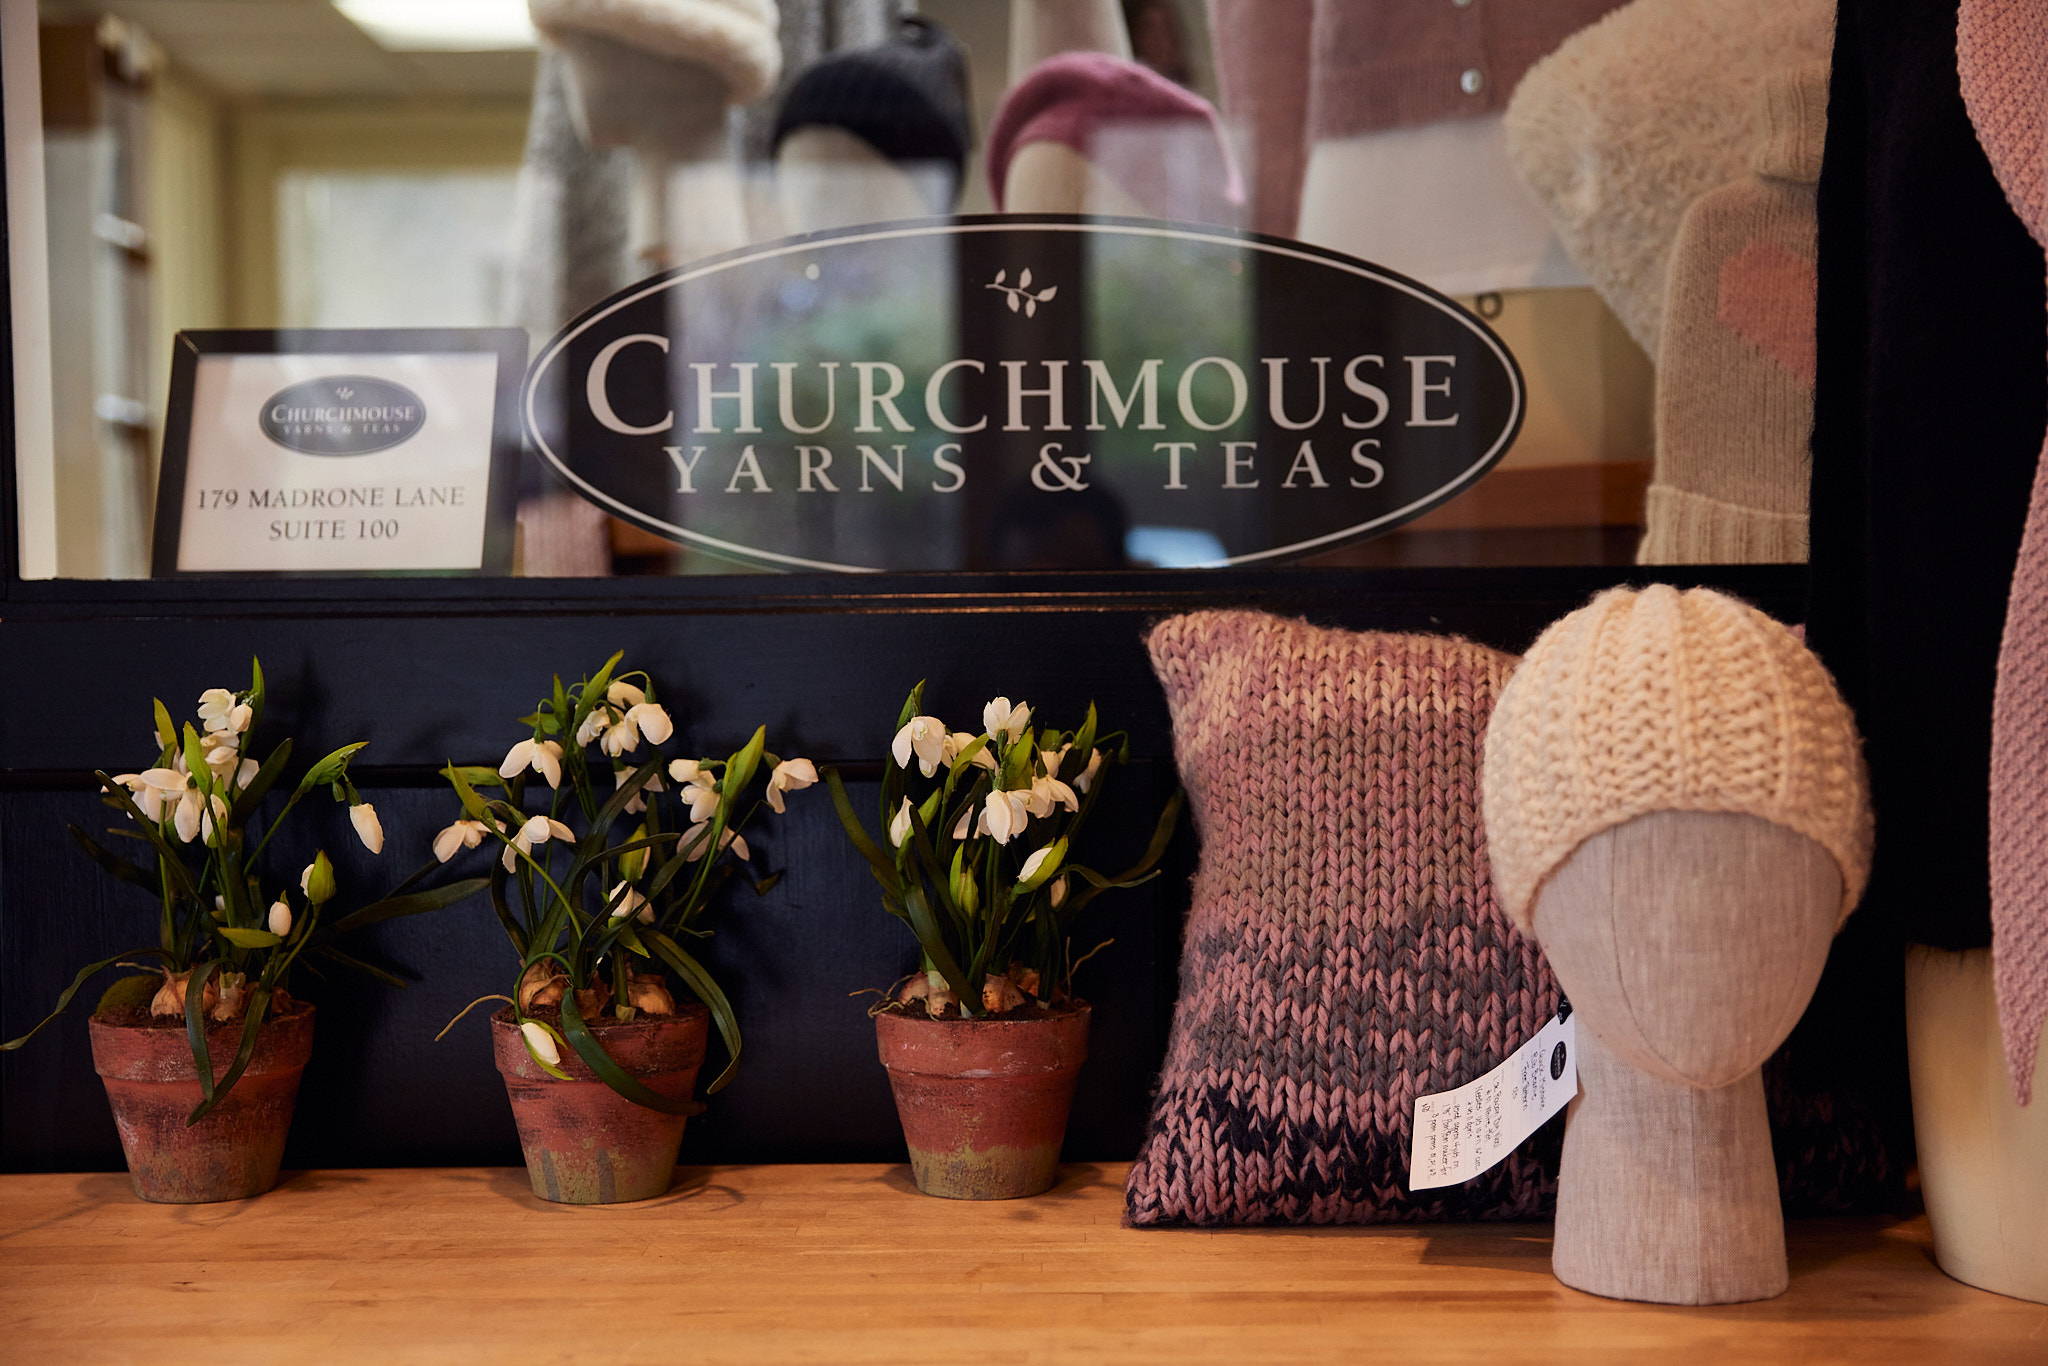 Classroom: The Learn-to-Knit Companion – Churchmouse Yarns & Teas